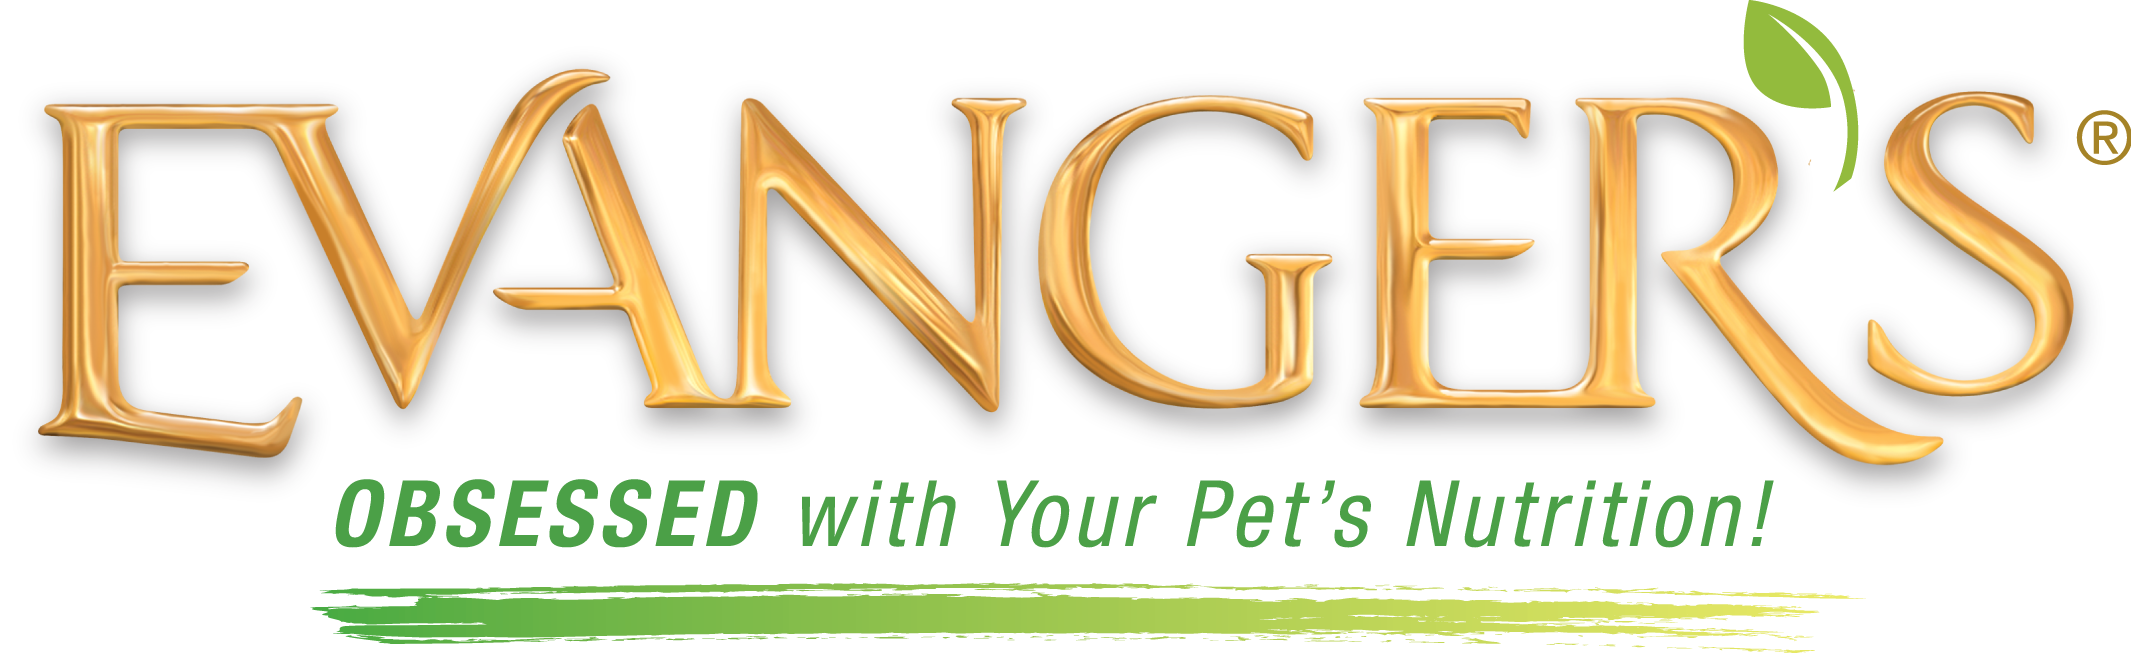 Evanger's Pet Foods Logo Image